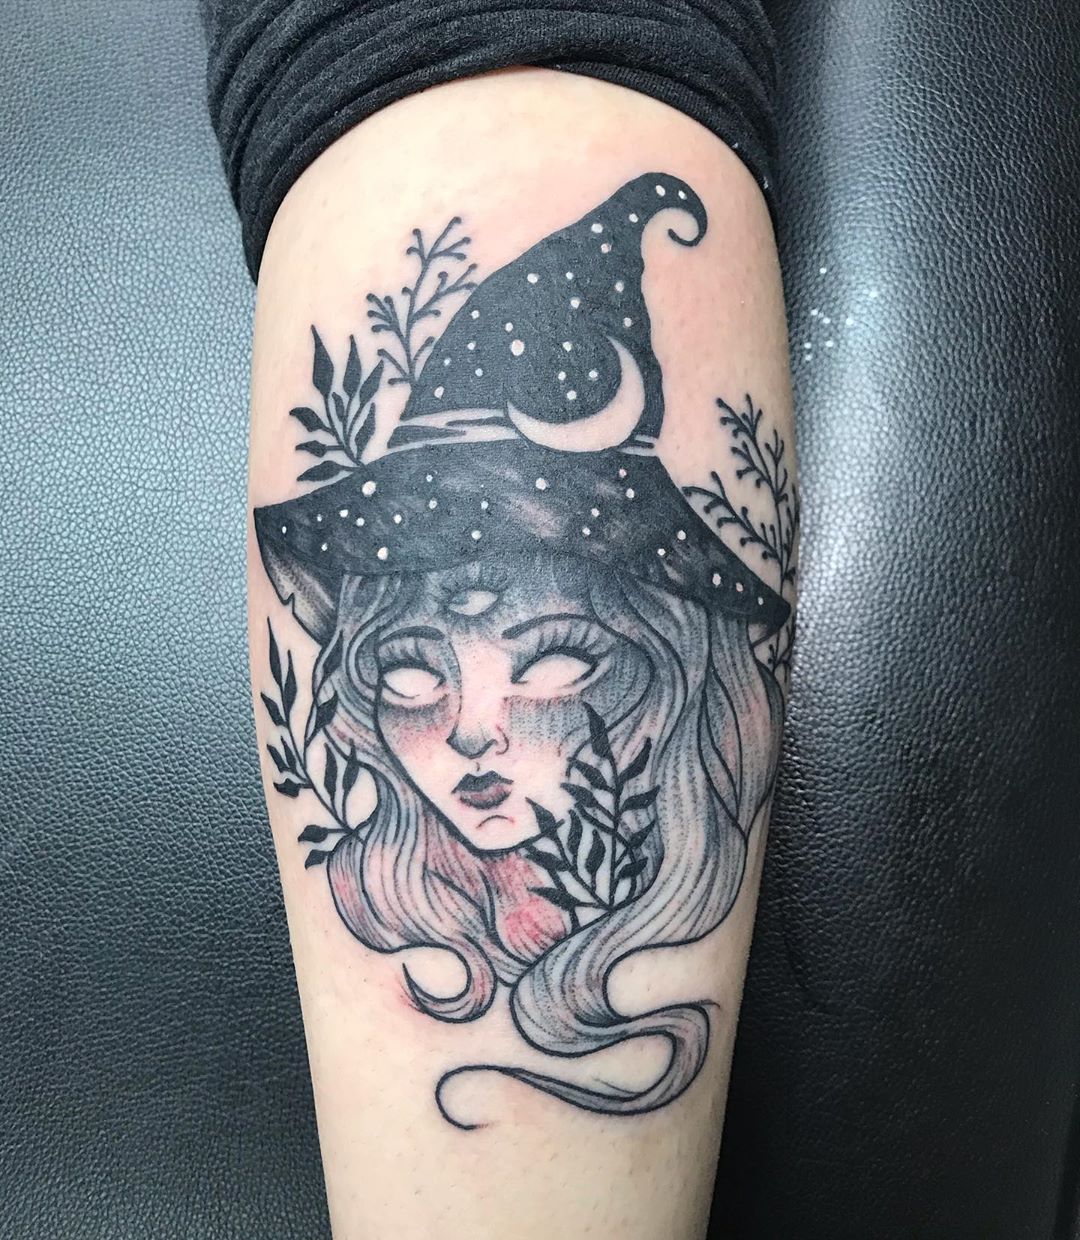 Tatuagem de bruxa: 70 ideias que emanam a sabedoria e o poder feminino